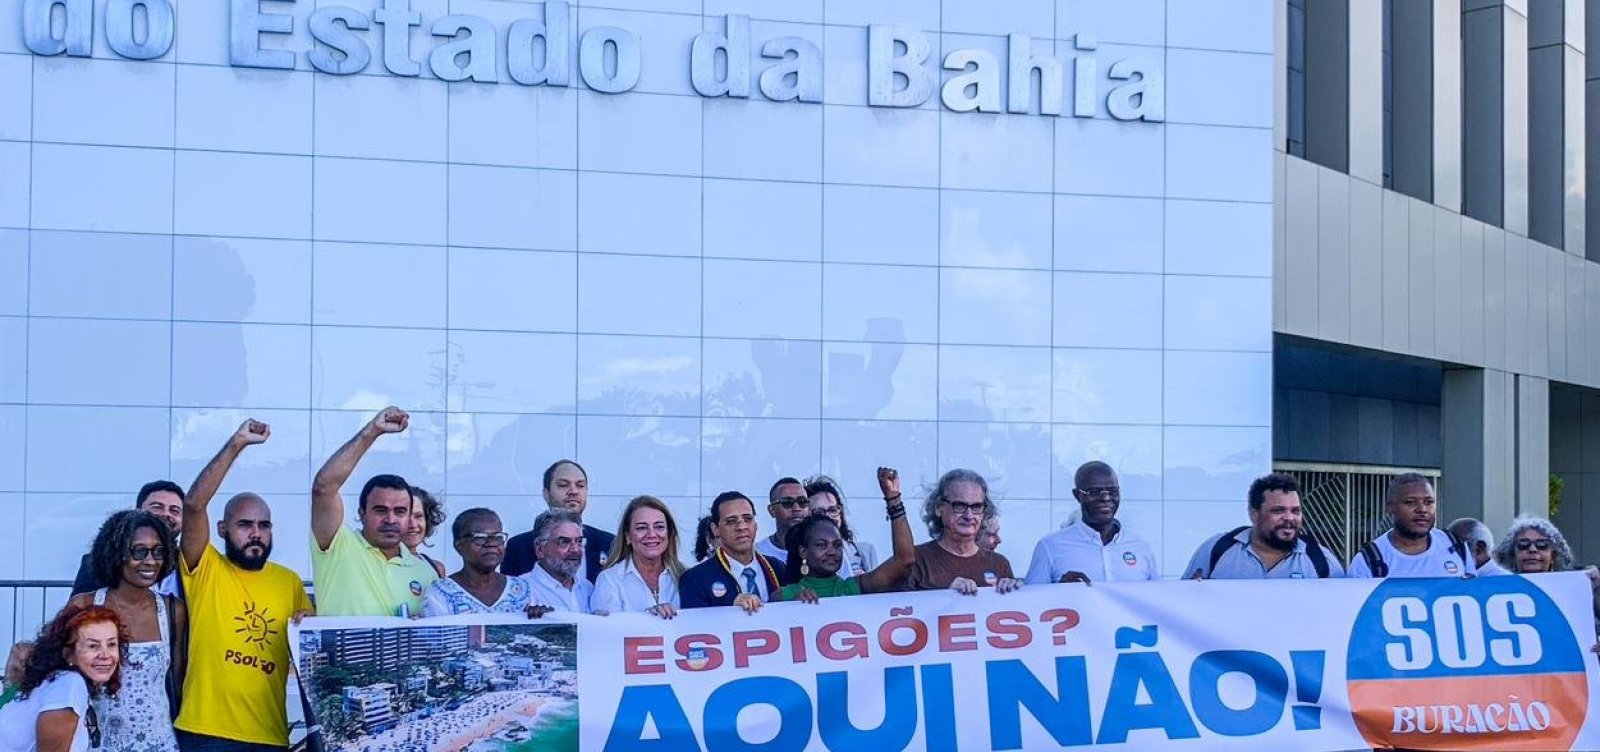 Grupo realiza ato em frente ao TJBA para cobrar posicionamento sobre espigões no Rio Vermelho 